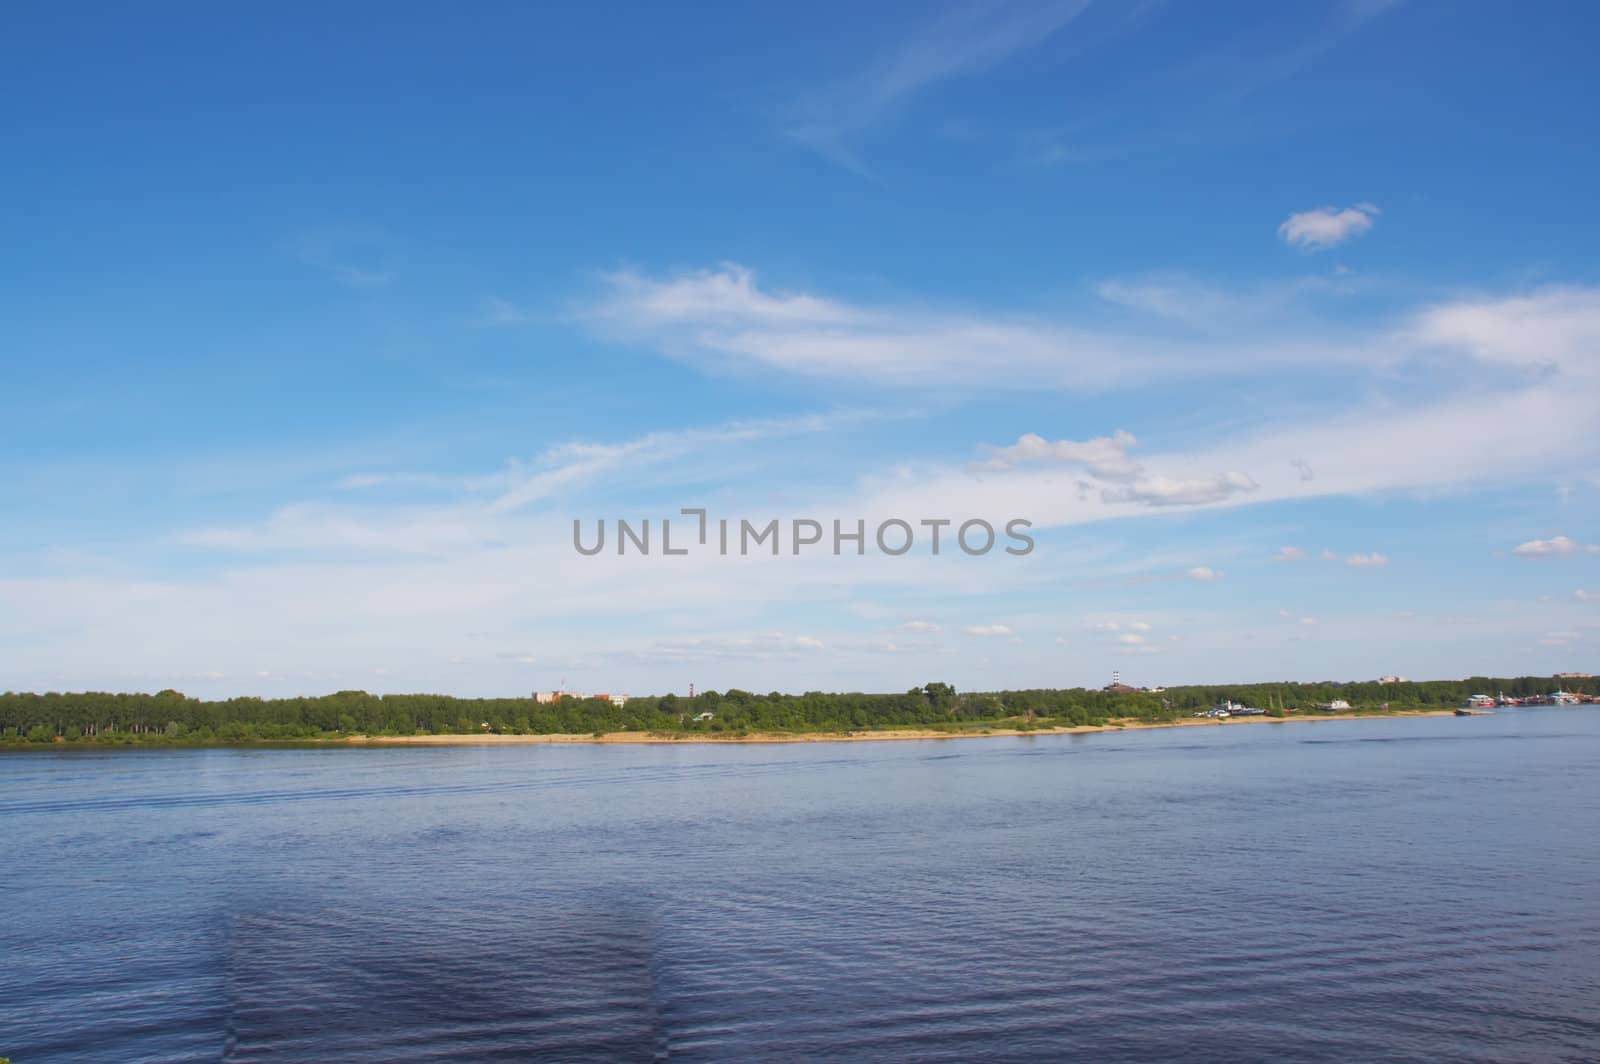 The river Volga in the city of Yaroslavl